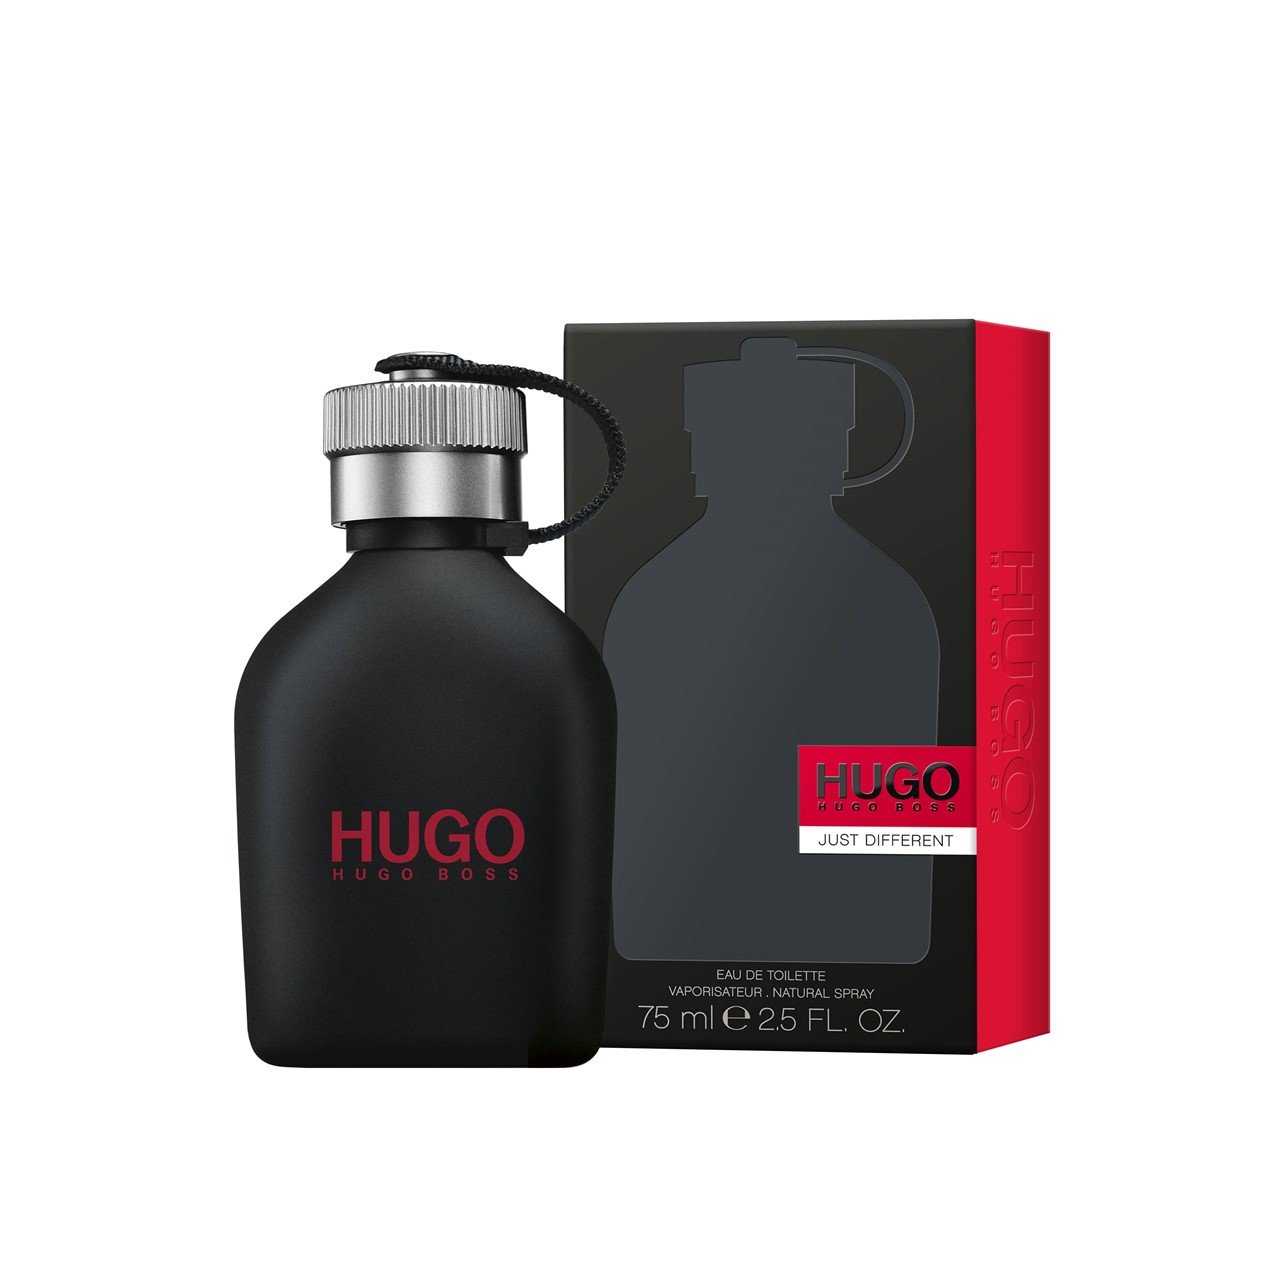 Hugo Boss Hugo Just Different Eau de Toilette 75ml (2.5fl oz)